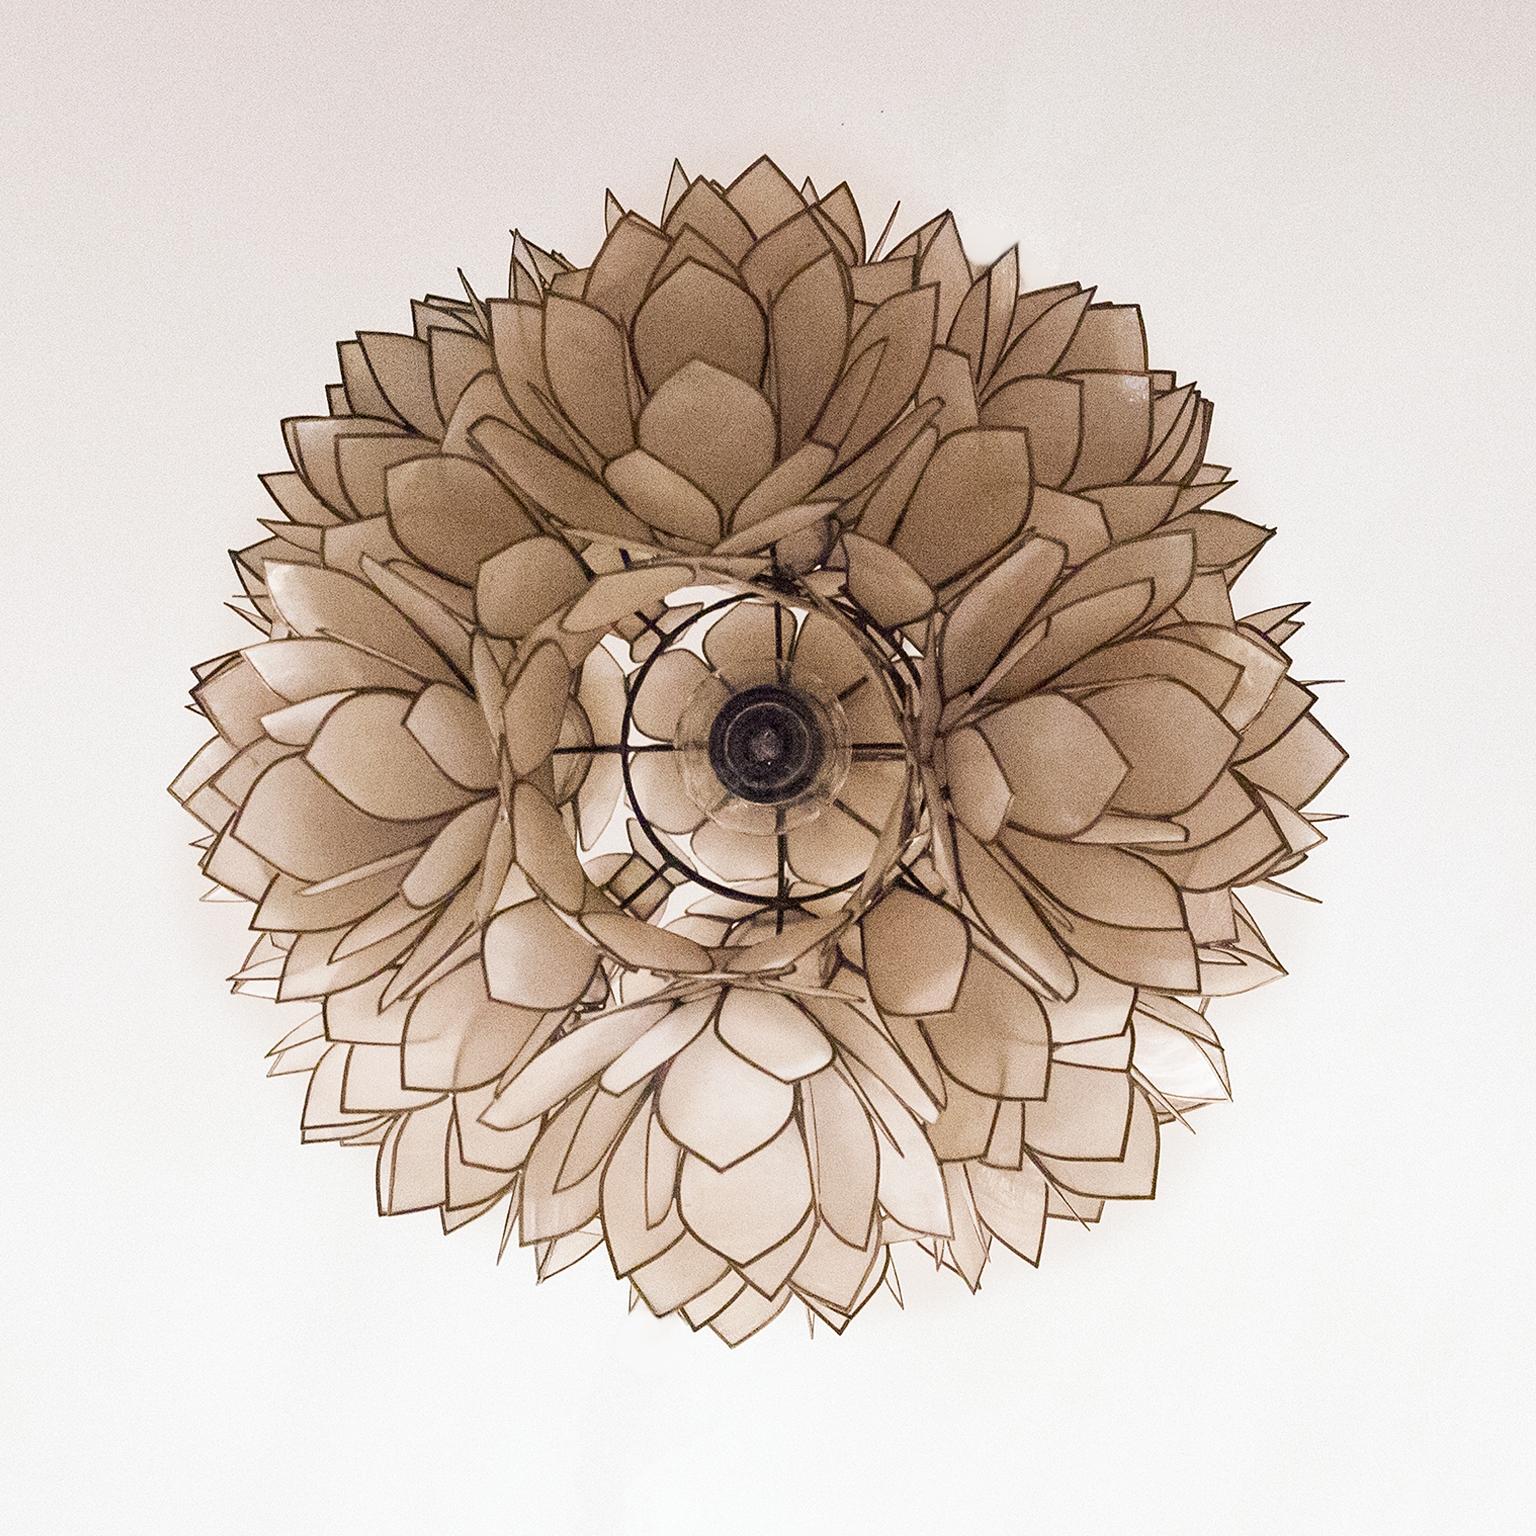 Dekorative und stilvolle Deckenlampe mit Blumen aus Perlmutt. 1970er Jahre kugelförmige Tischlampe, bestehend aus Gruppen von dünnen, einzeln Metall umrandet, Perlmutt Blätter. Die Blätter bilden Büschel von abstrakten Blüten. Die Leuchte lässt sich